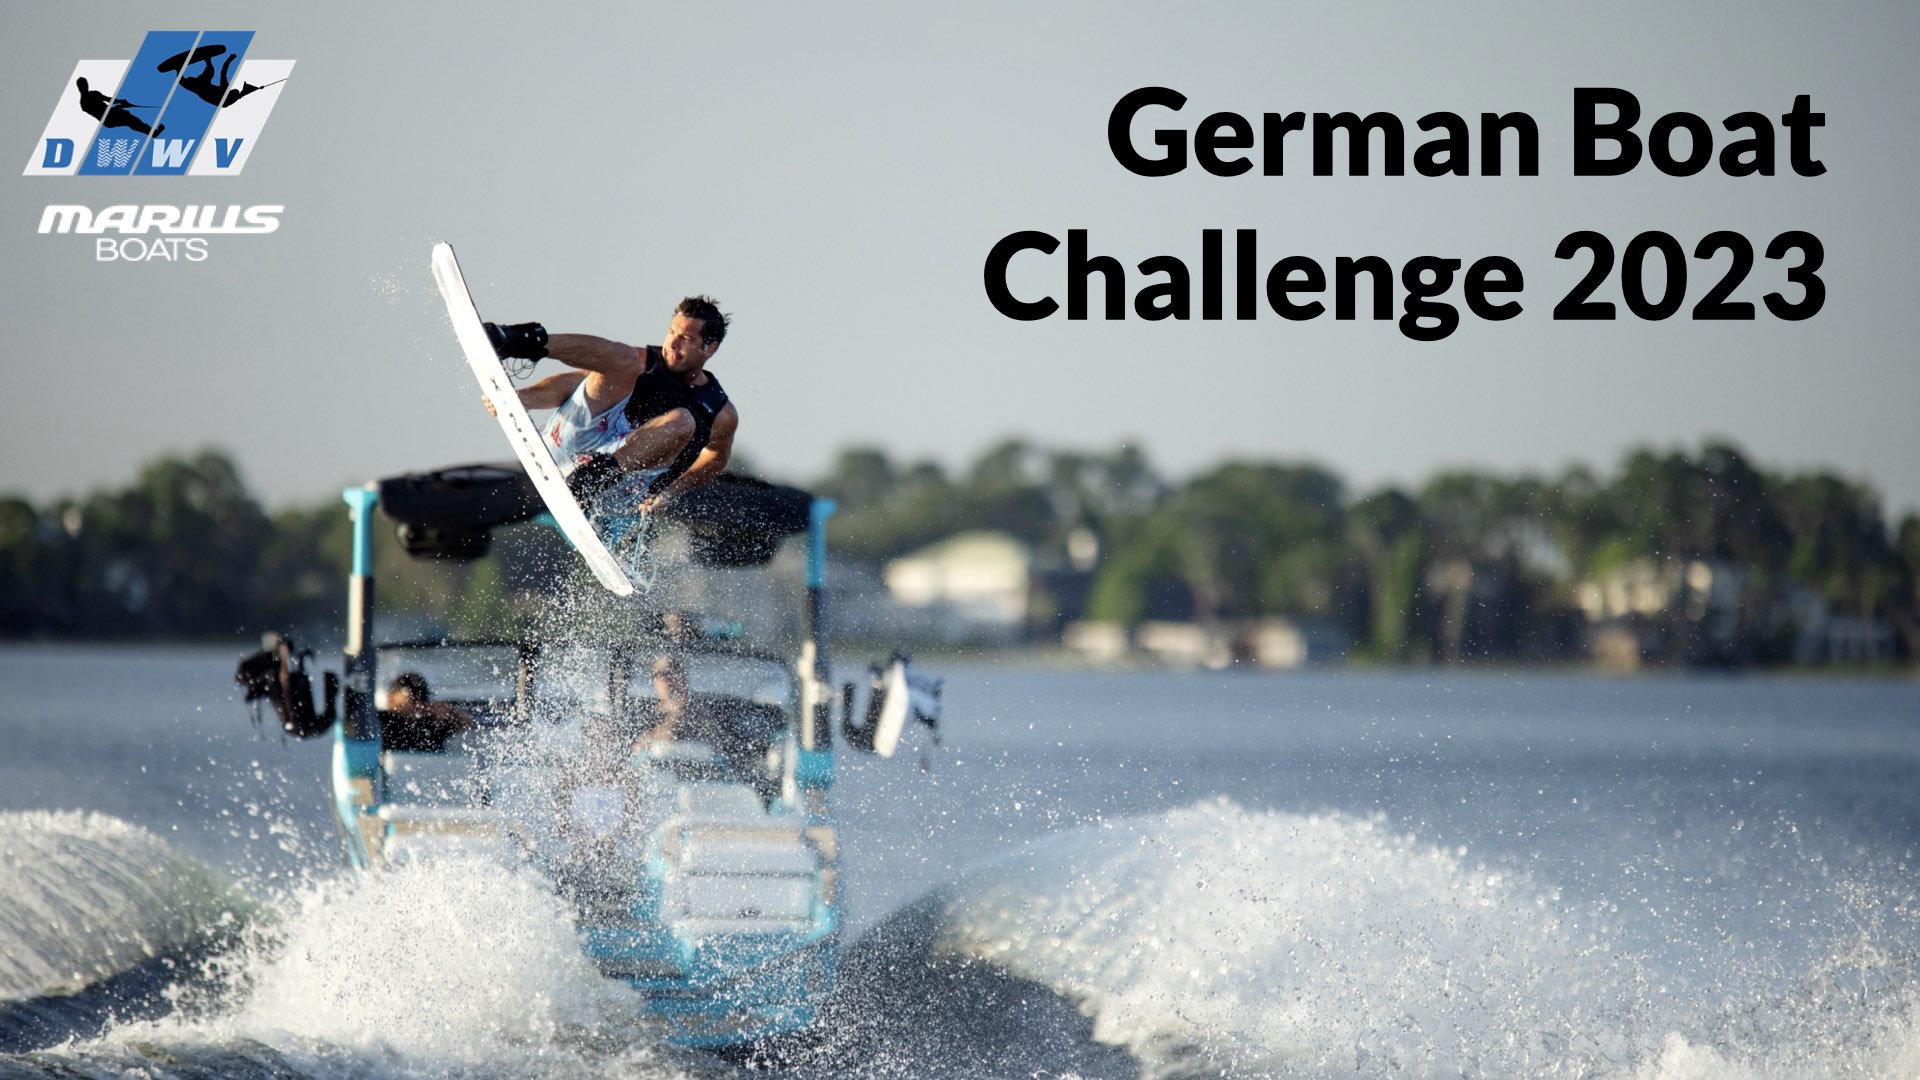 German Boat Challenge 2023 #1 Best Heelside Back2Back Trick